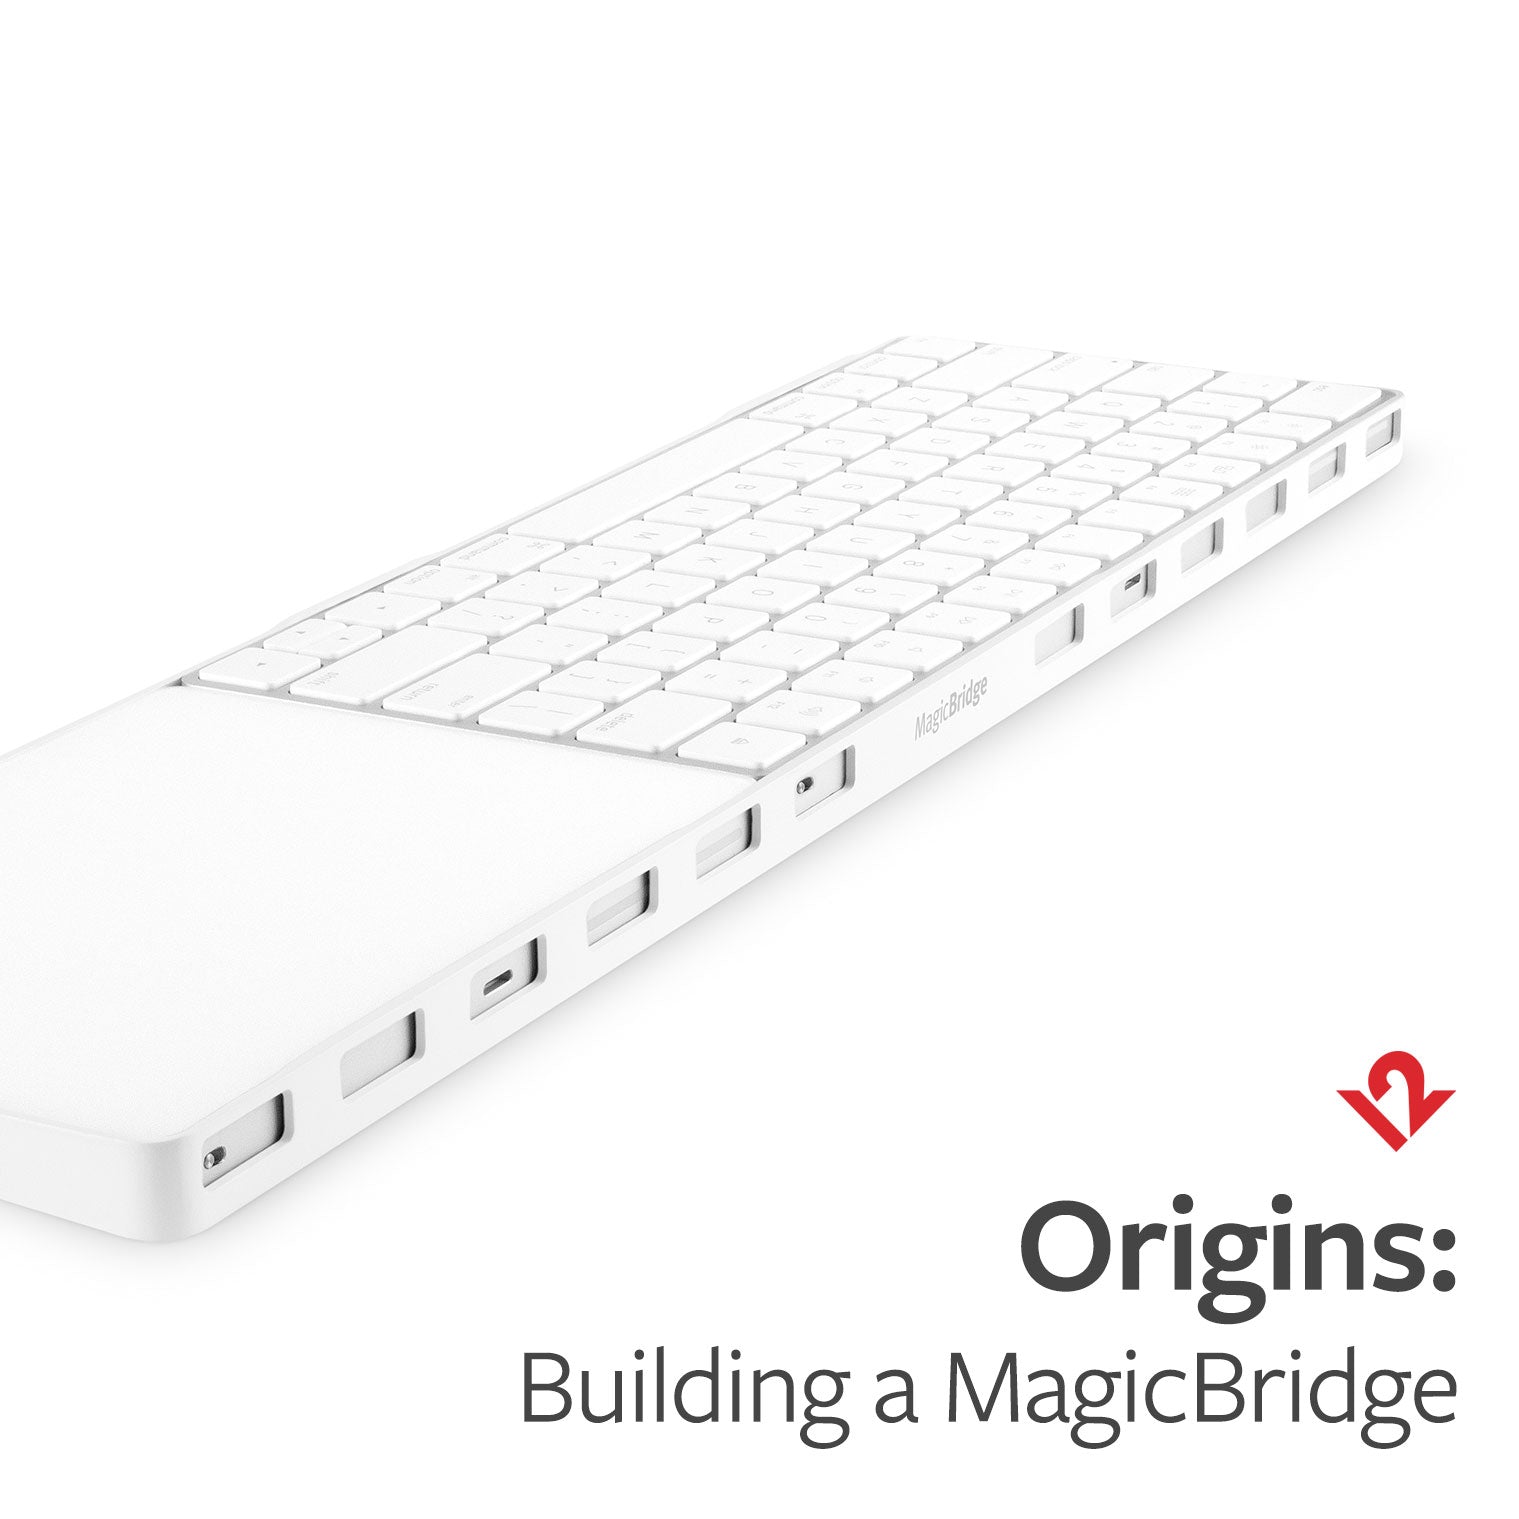  Origins: Building a MagicBridge